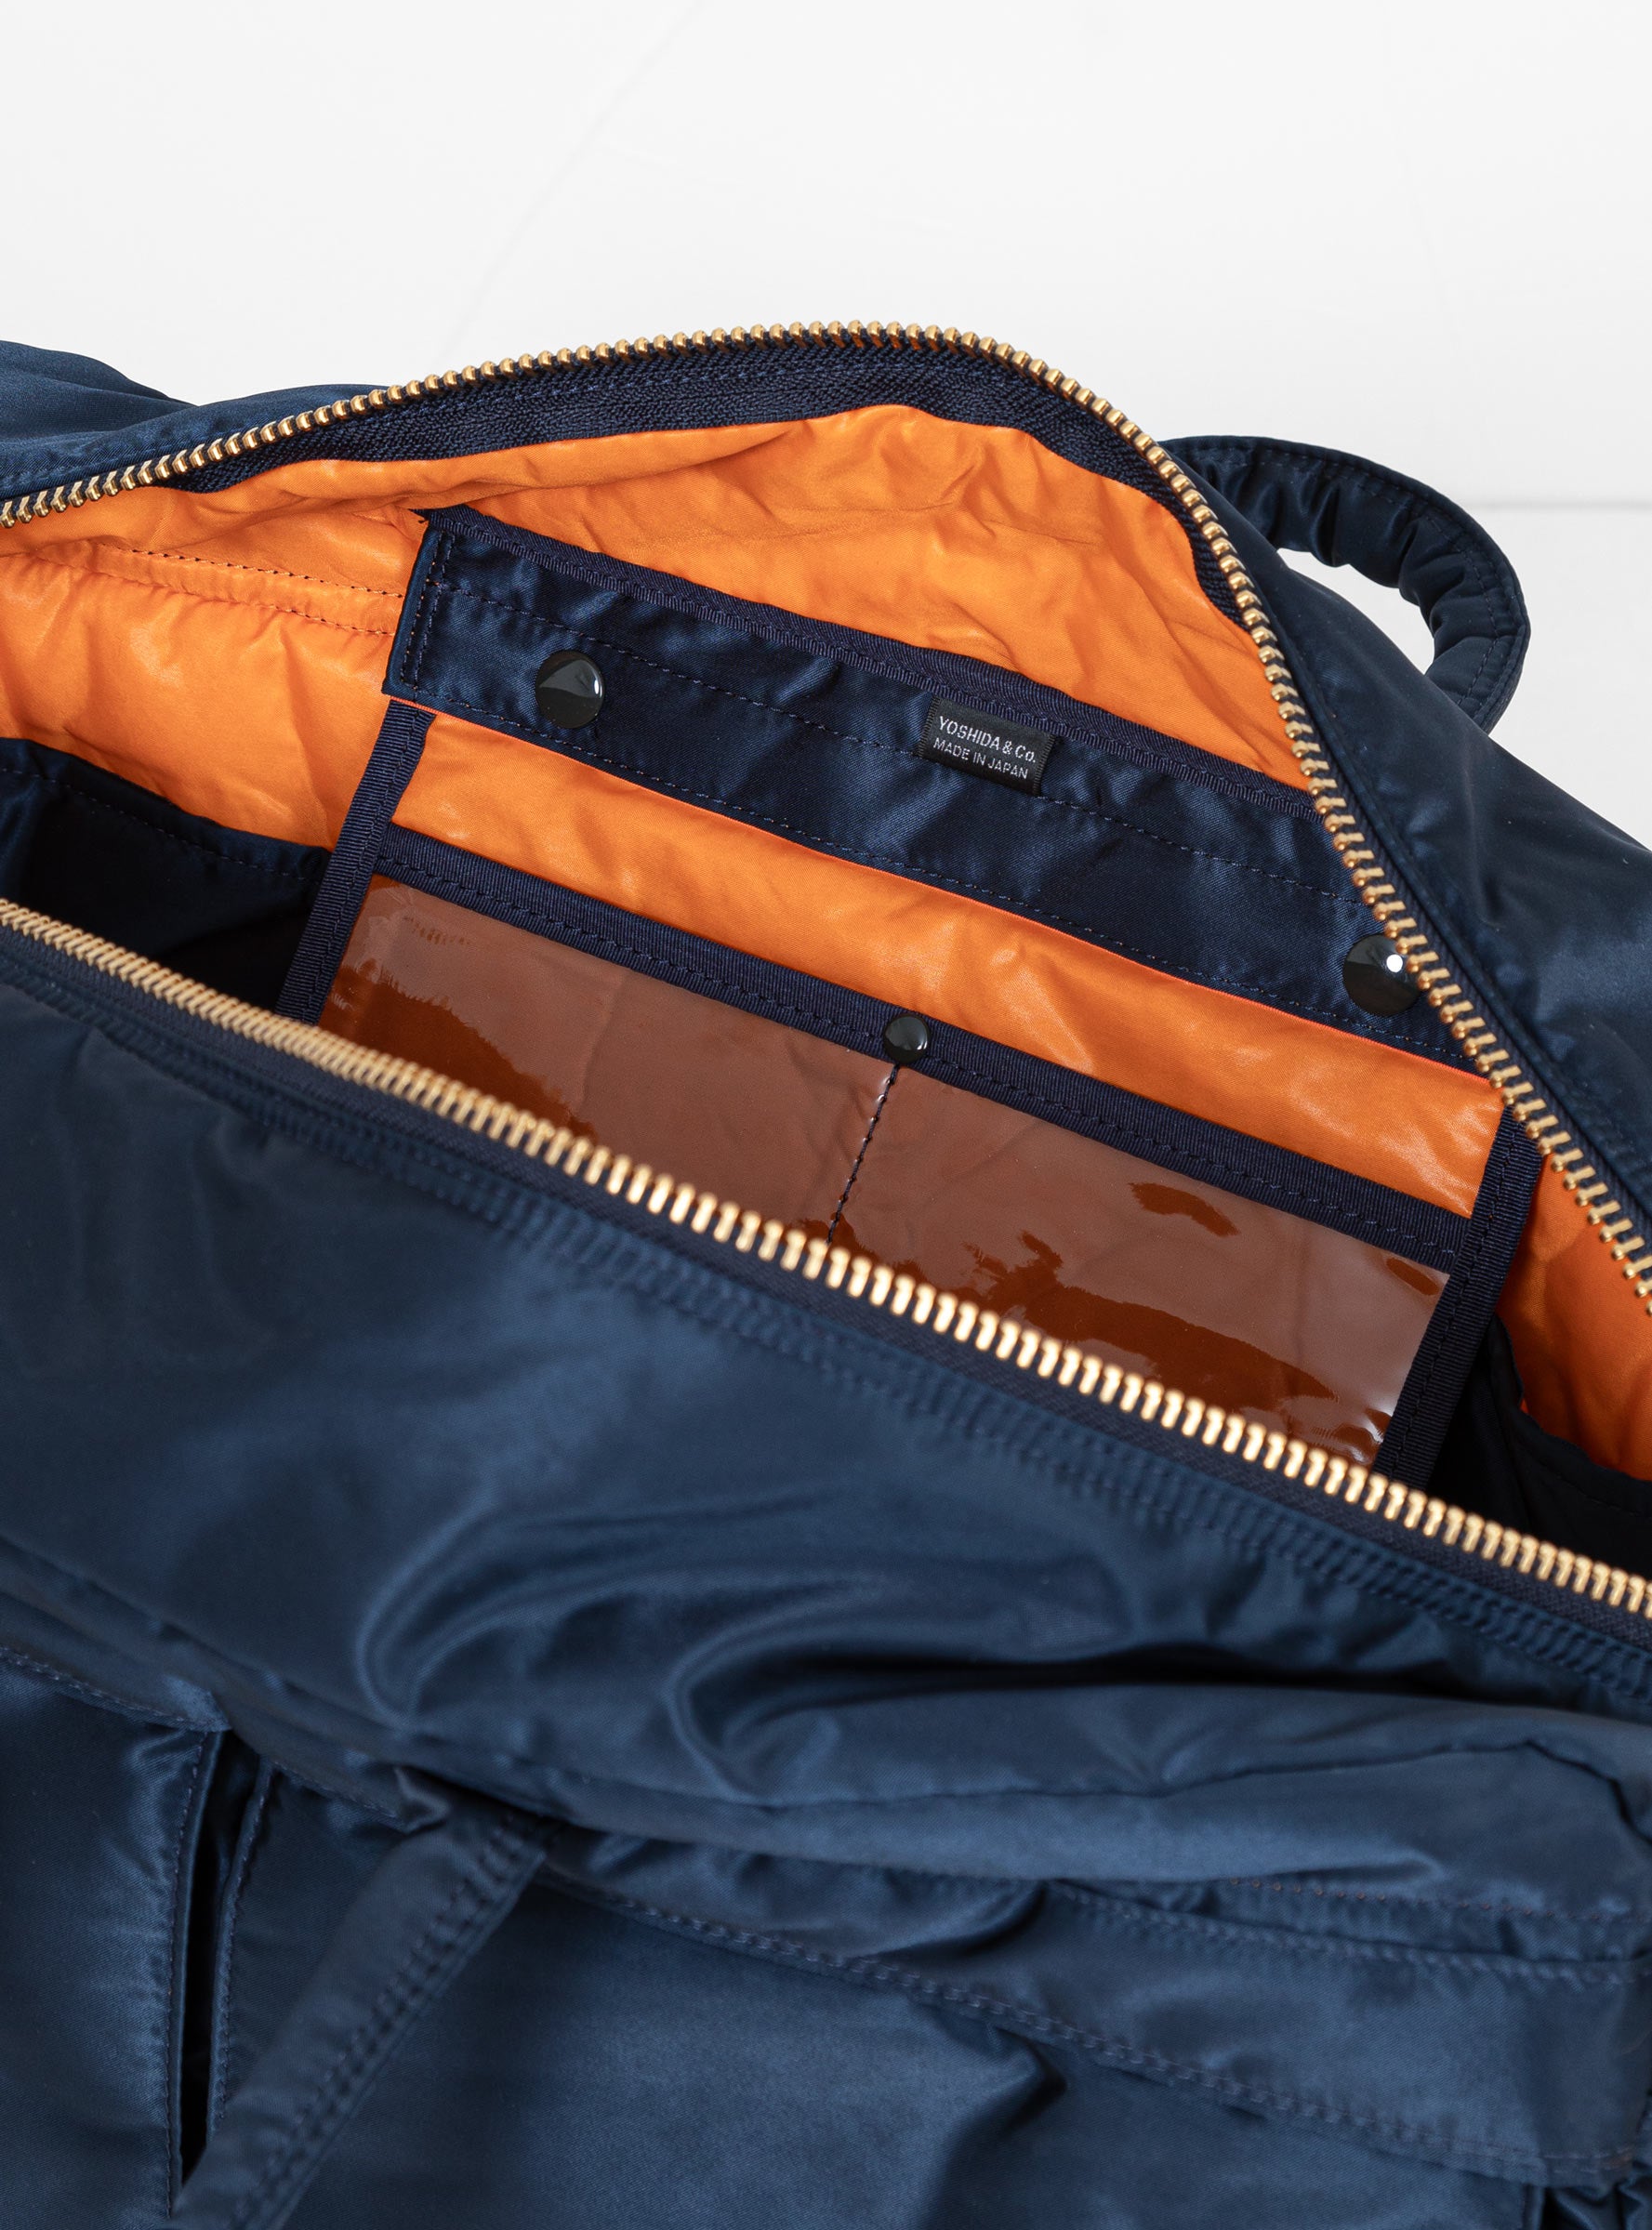  Porter Yoshida & Co. TANKER 2-Way Duffle Bag Small Iron Blue